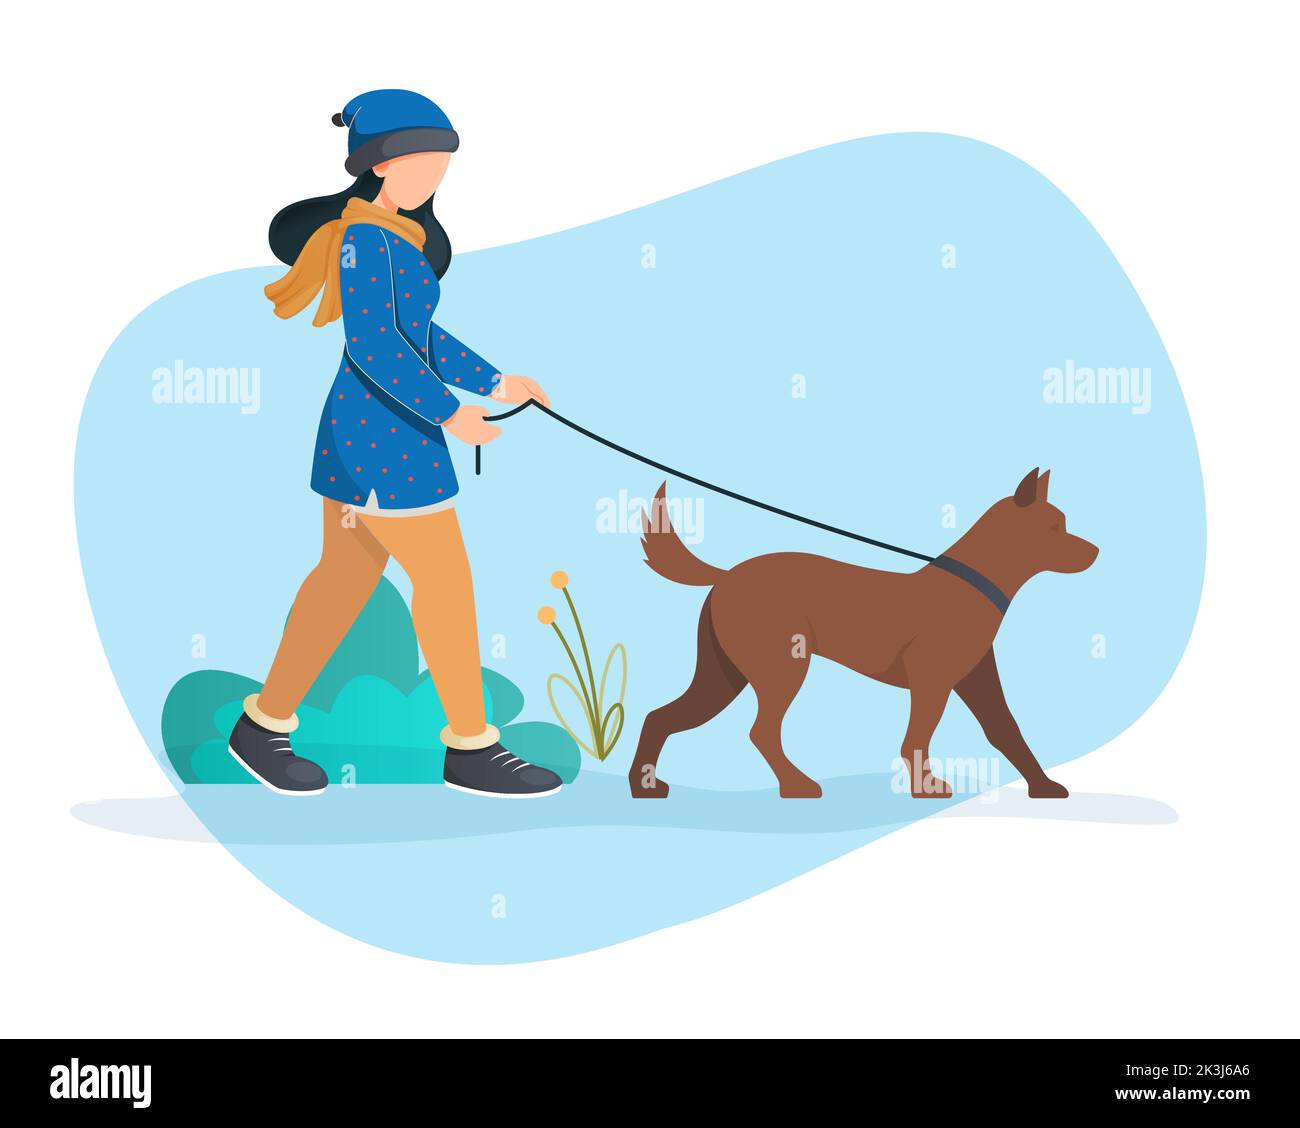 Frauen Wanderhund im kalten Schneewinter - Stockillustration als EPS 10 Datei Stock Vektor